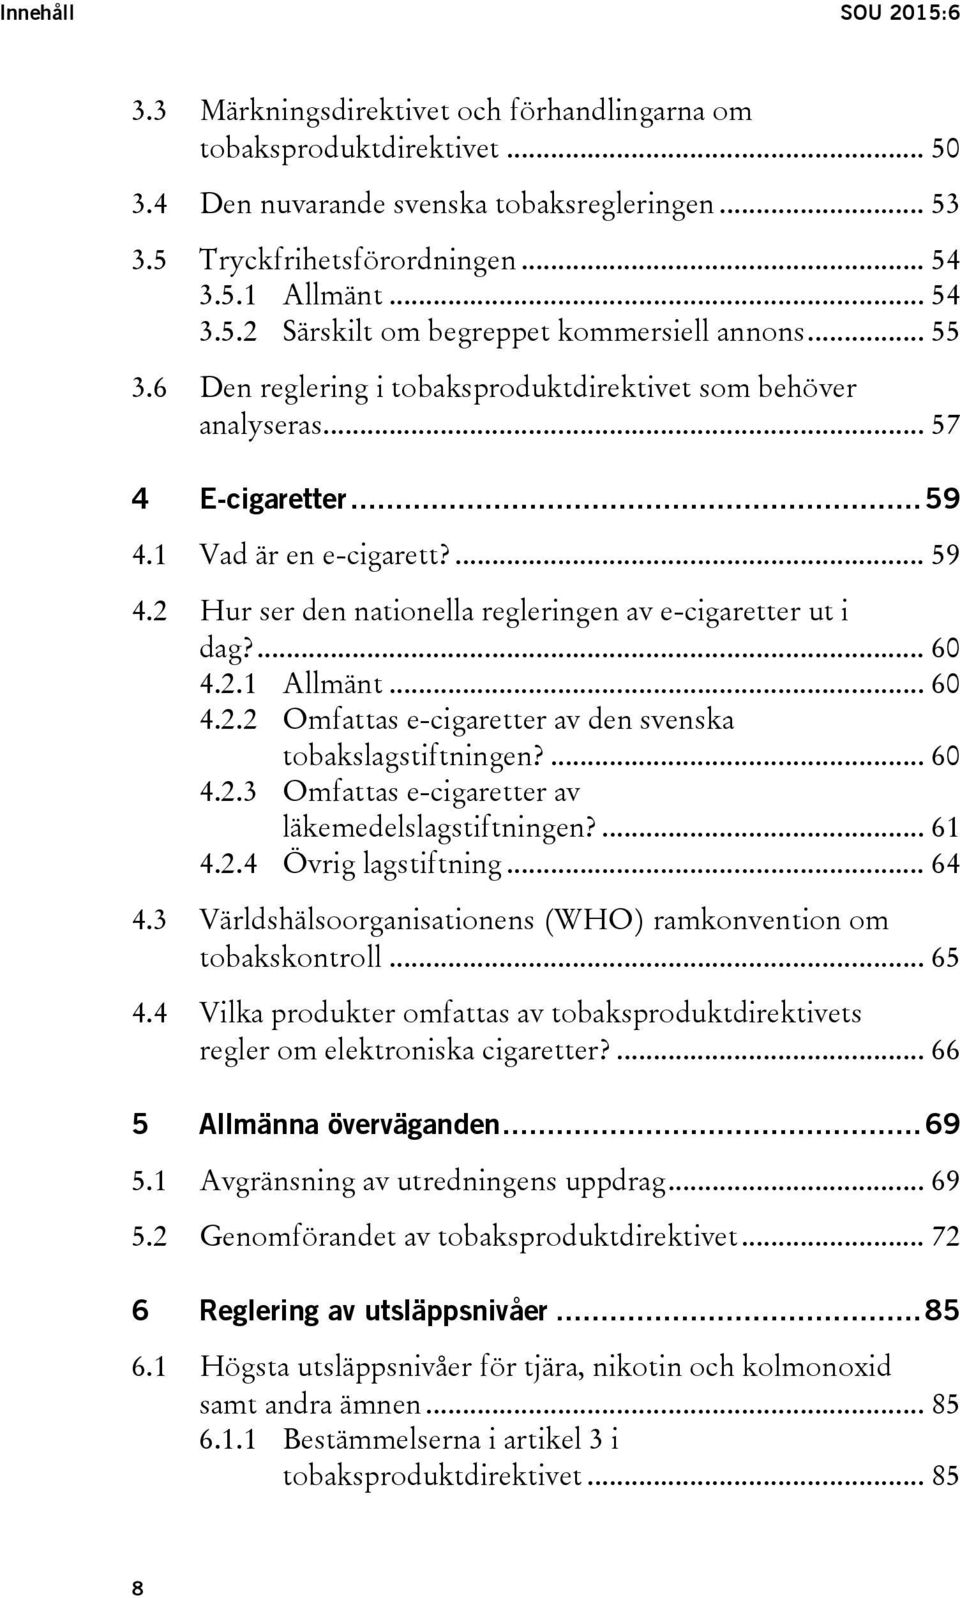 1 Vad är en e-cigarett?... 59 4.2 Hur ser den nationella regleringen av e-cigaretter ut i dag?... 60 4.2.1 Allmänt... 60 4.2.2 Omfattas e-cigaretter av den svenska tobakslagstiftningen?... 60 4.2.3 Omfattas e-cigaretter av läkemedelslagstiftningen?